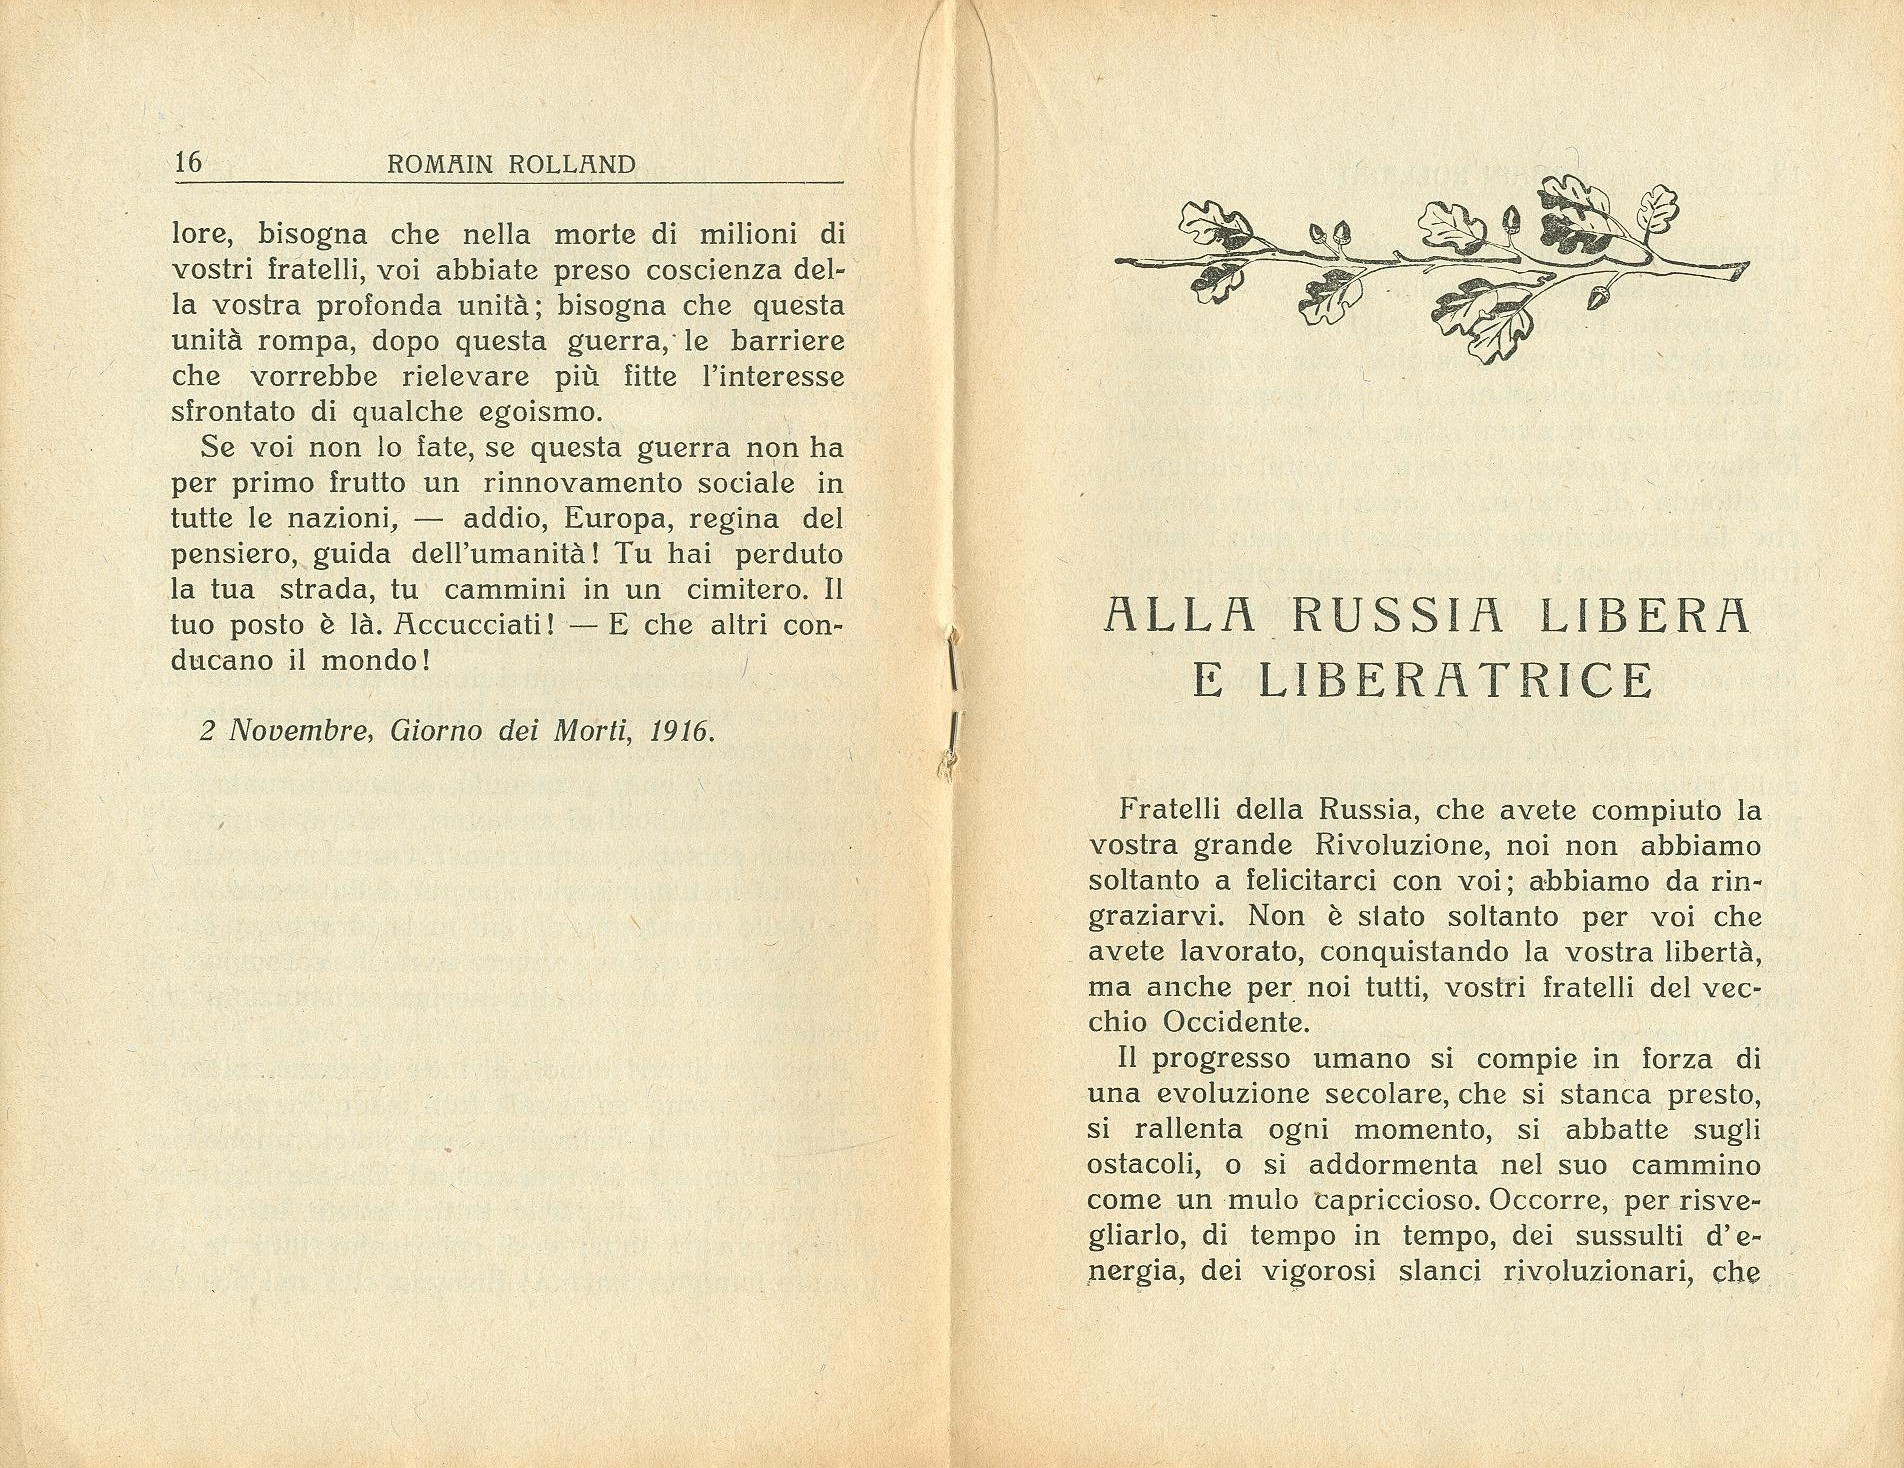 Romain Rolland, Ai popoli assassinati. Alla Russia libera e liberatrice. Educazione moderna (1921) - pag. 10